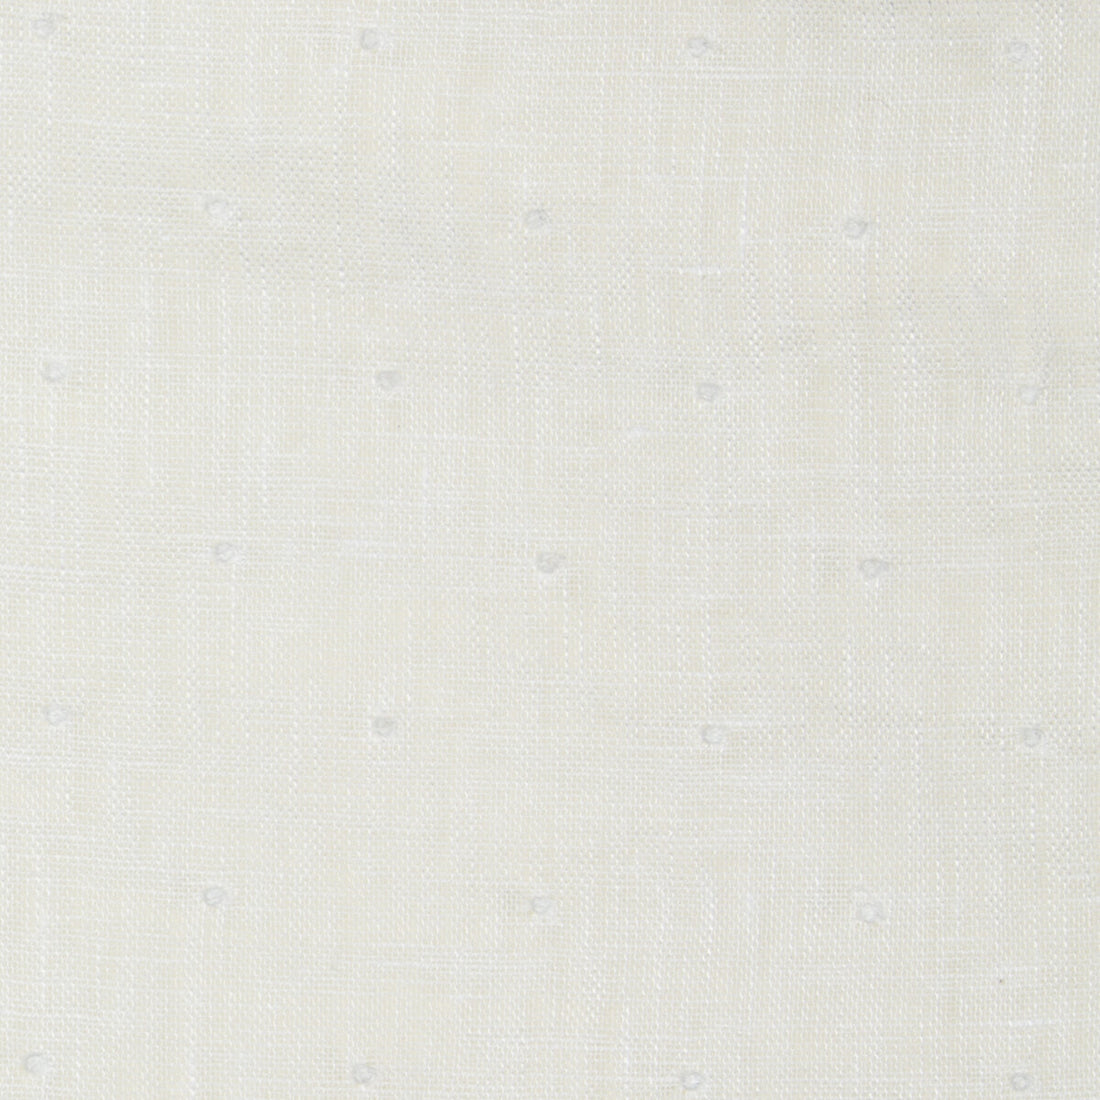 Kravet Basics fabric in 4434-101 color - pattern 4434.101.0 - by Kravet Basics